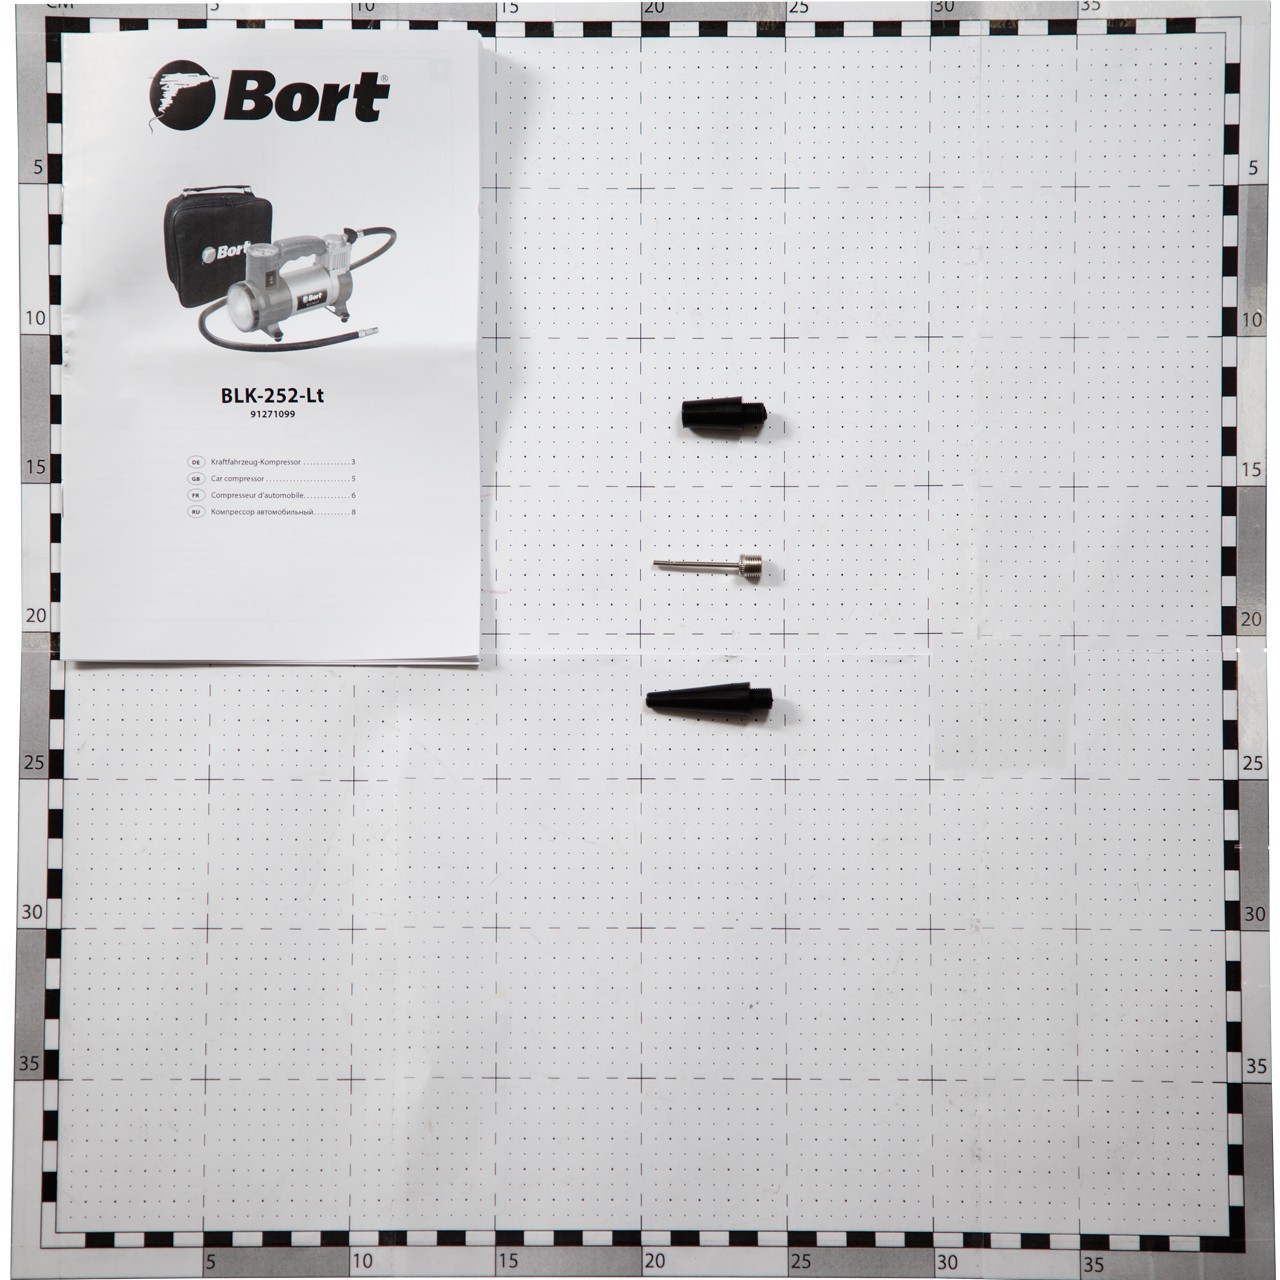   Bort BLK-252-LT (91271099)